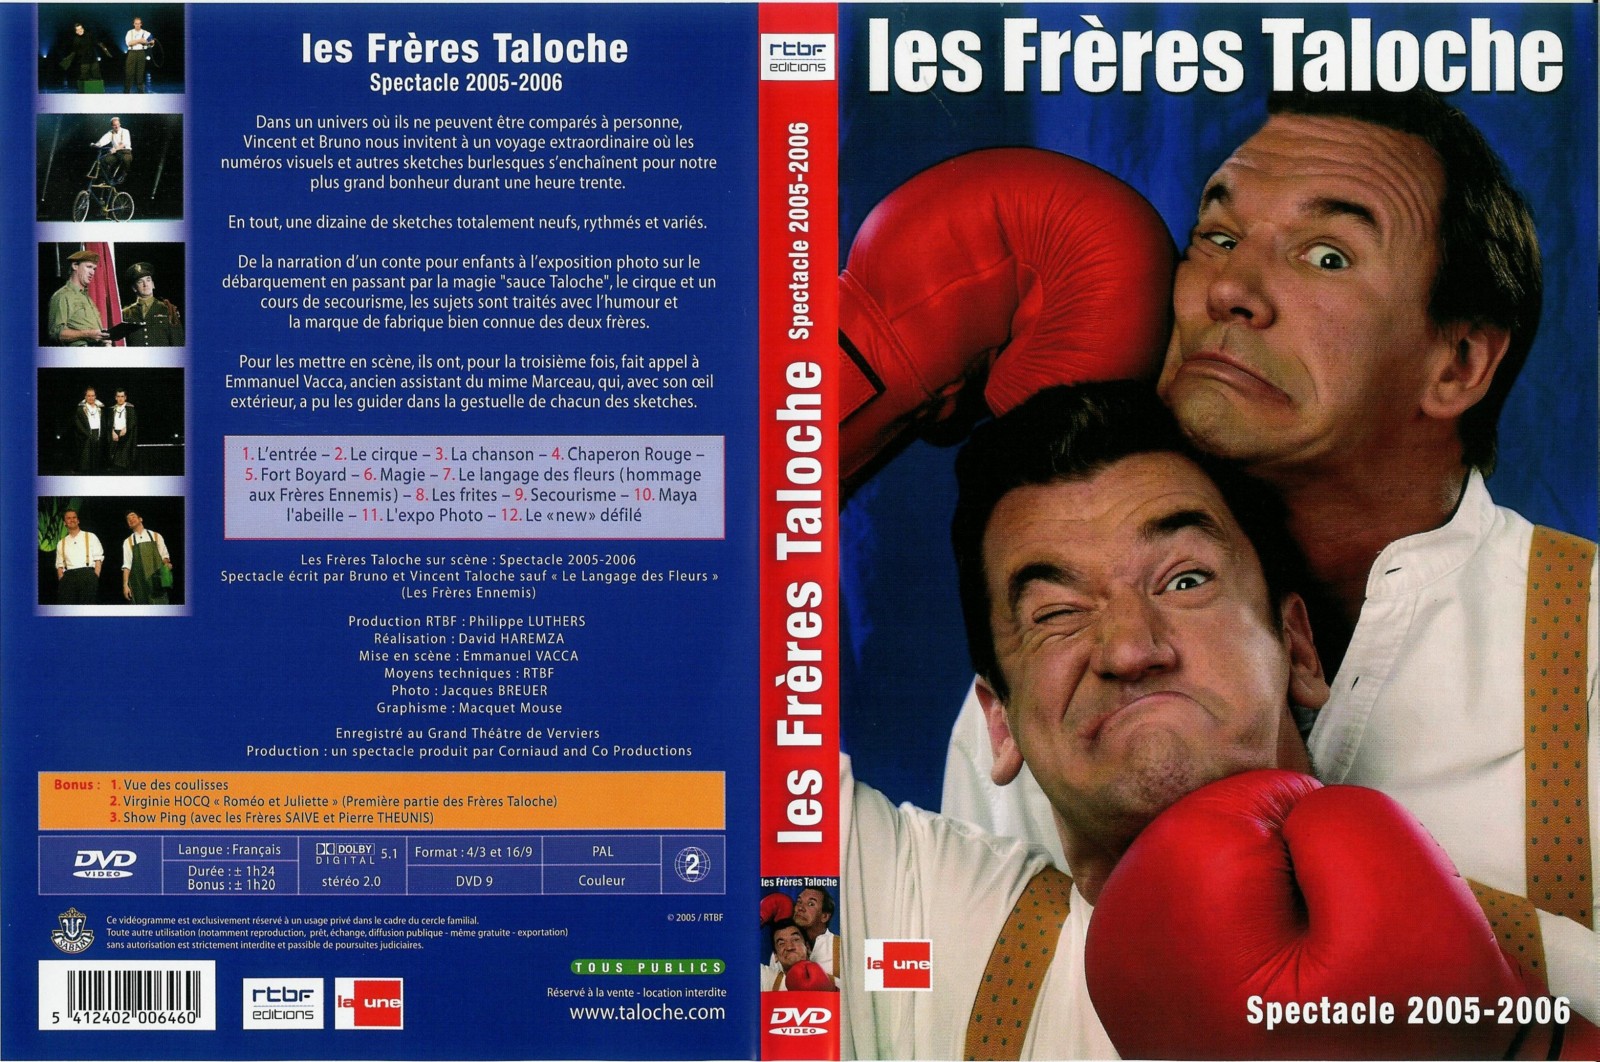 Jaquette DVD Les frres Taloche Spectacle 2005-2006